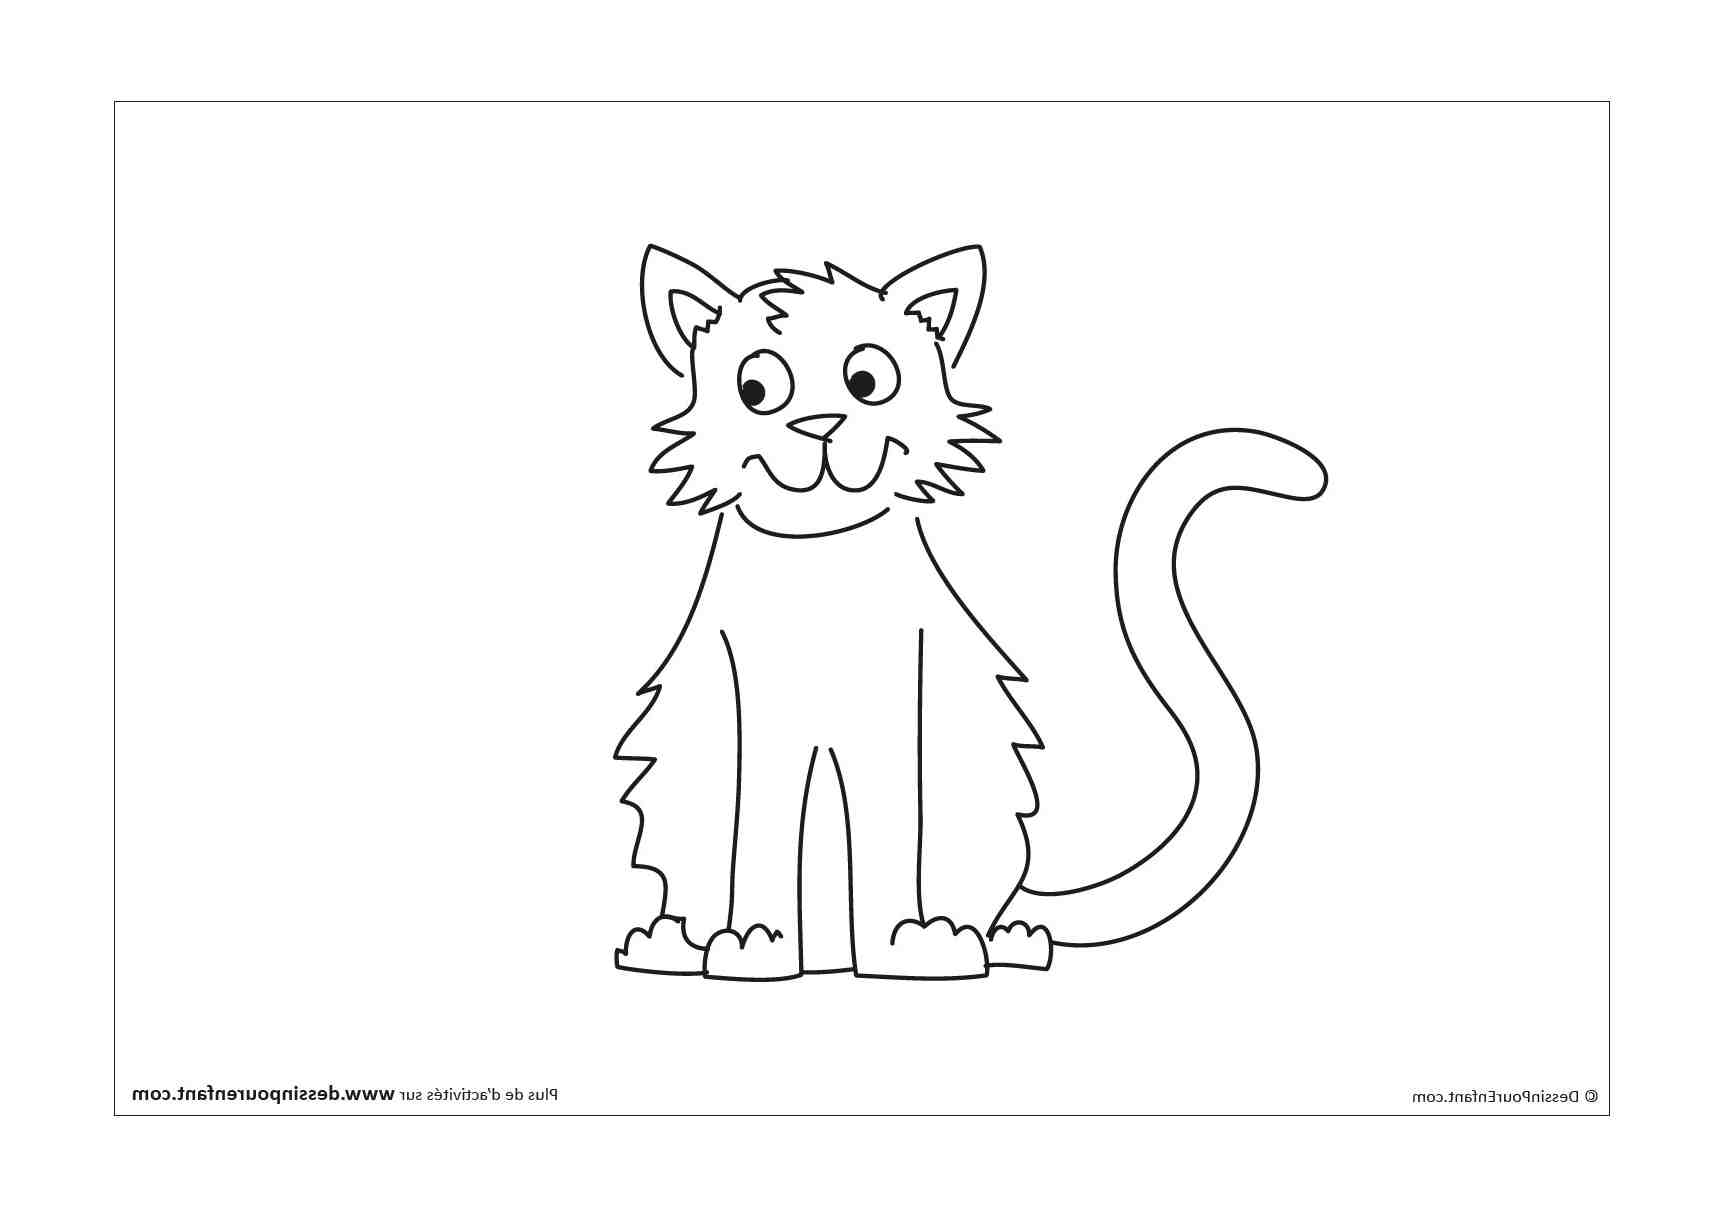 Comment faire un dessin de chat facile ?